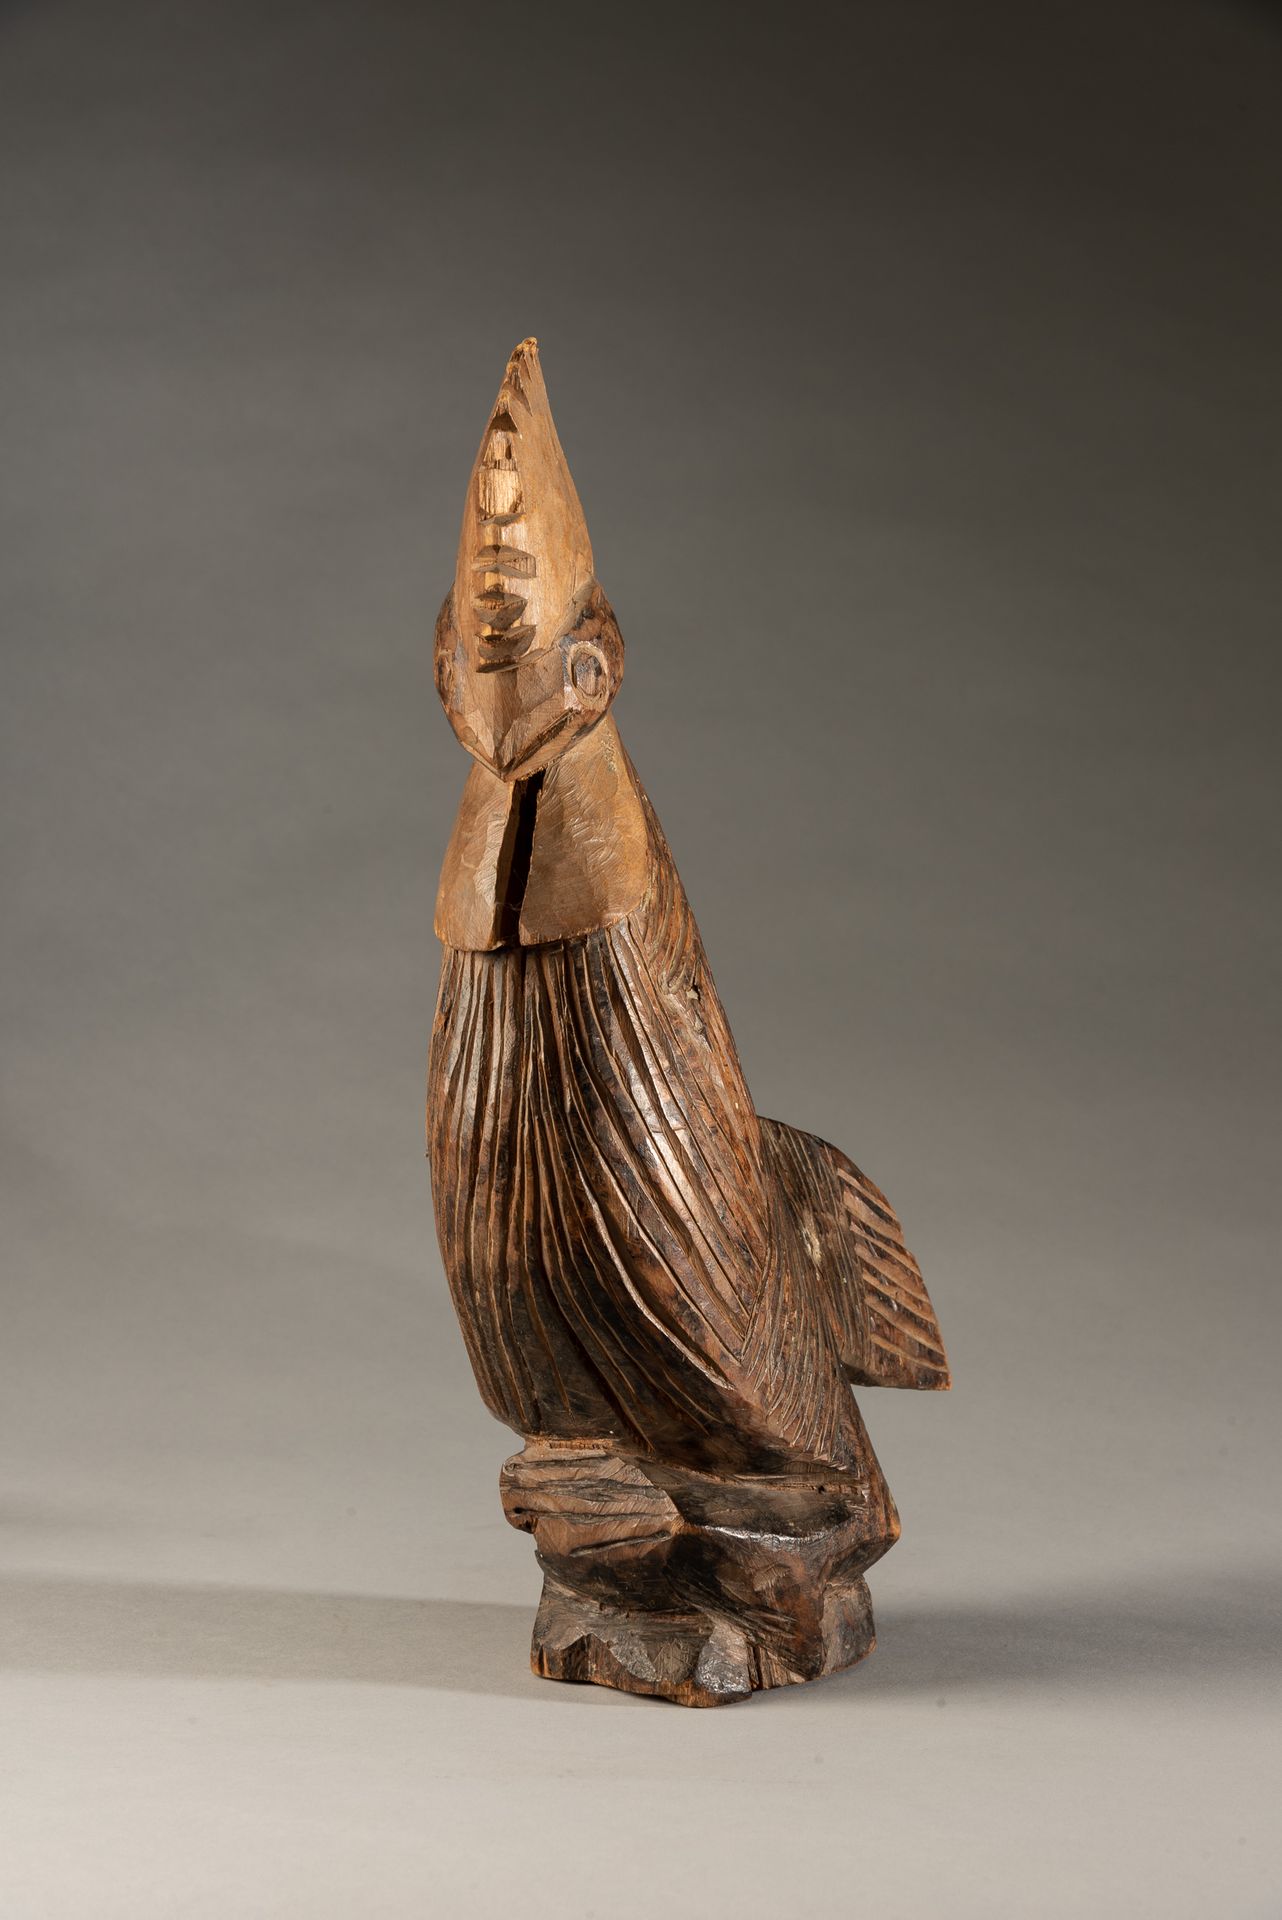 Null "Gallo di legno, Nigeria - Figura tribale di gallo scolpita nel legno. 



&hellip;